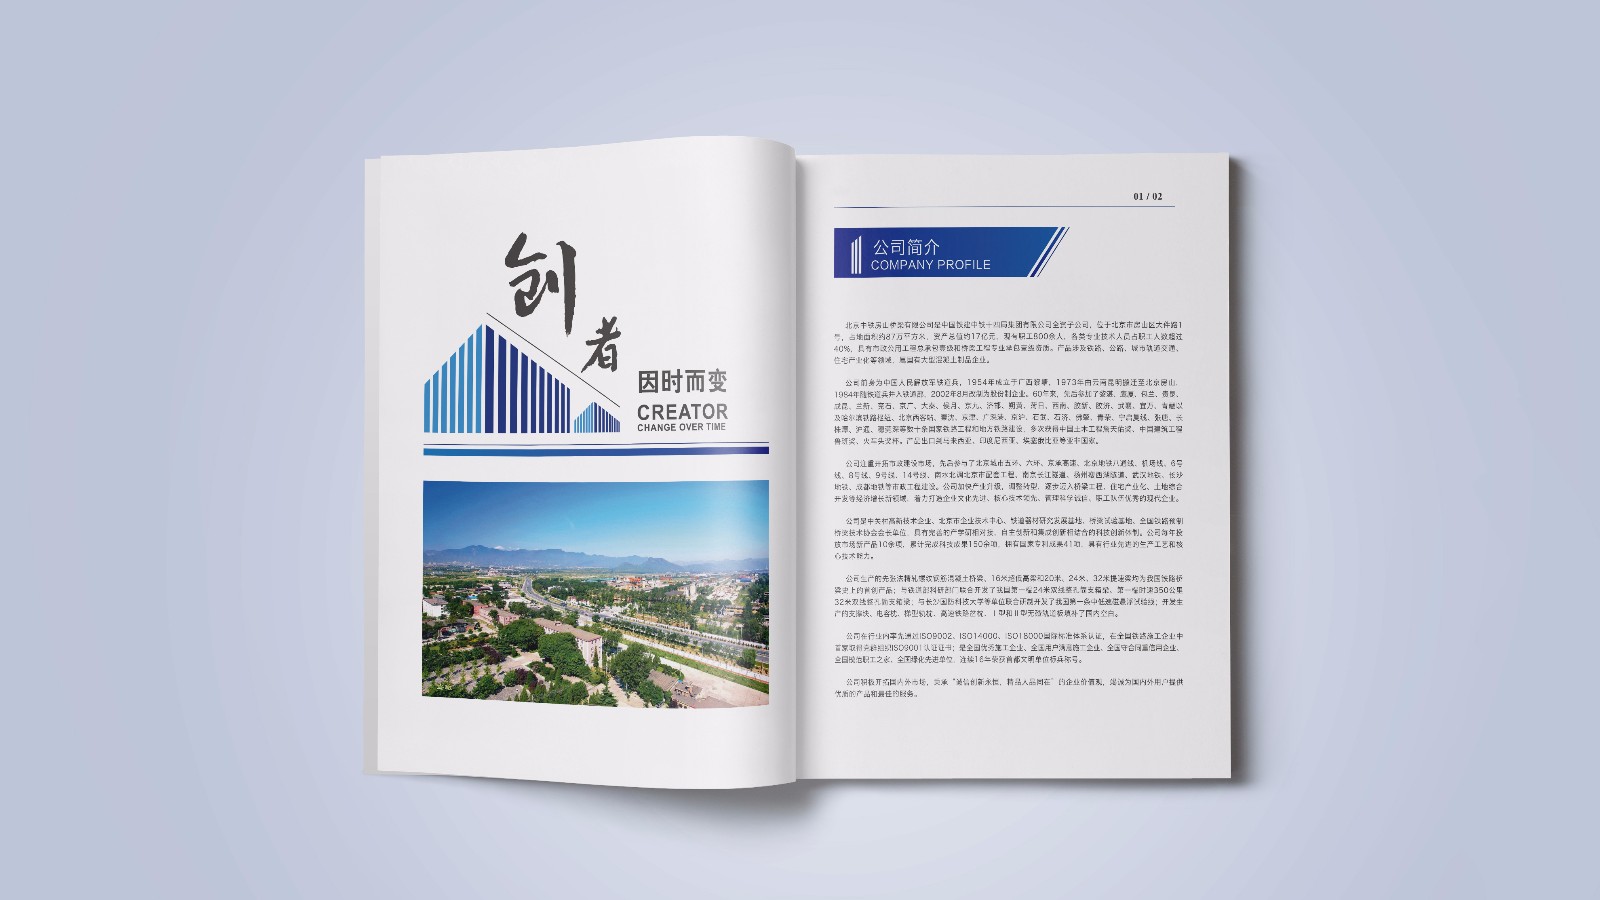 北京中铁企业宣传画册设计制作